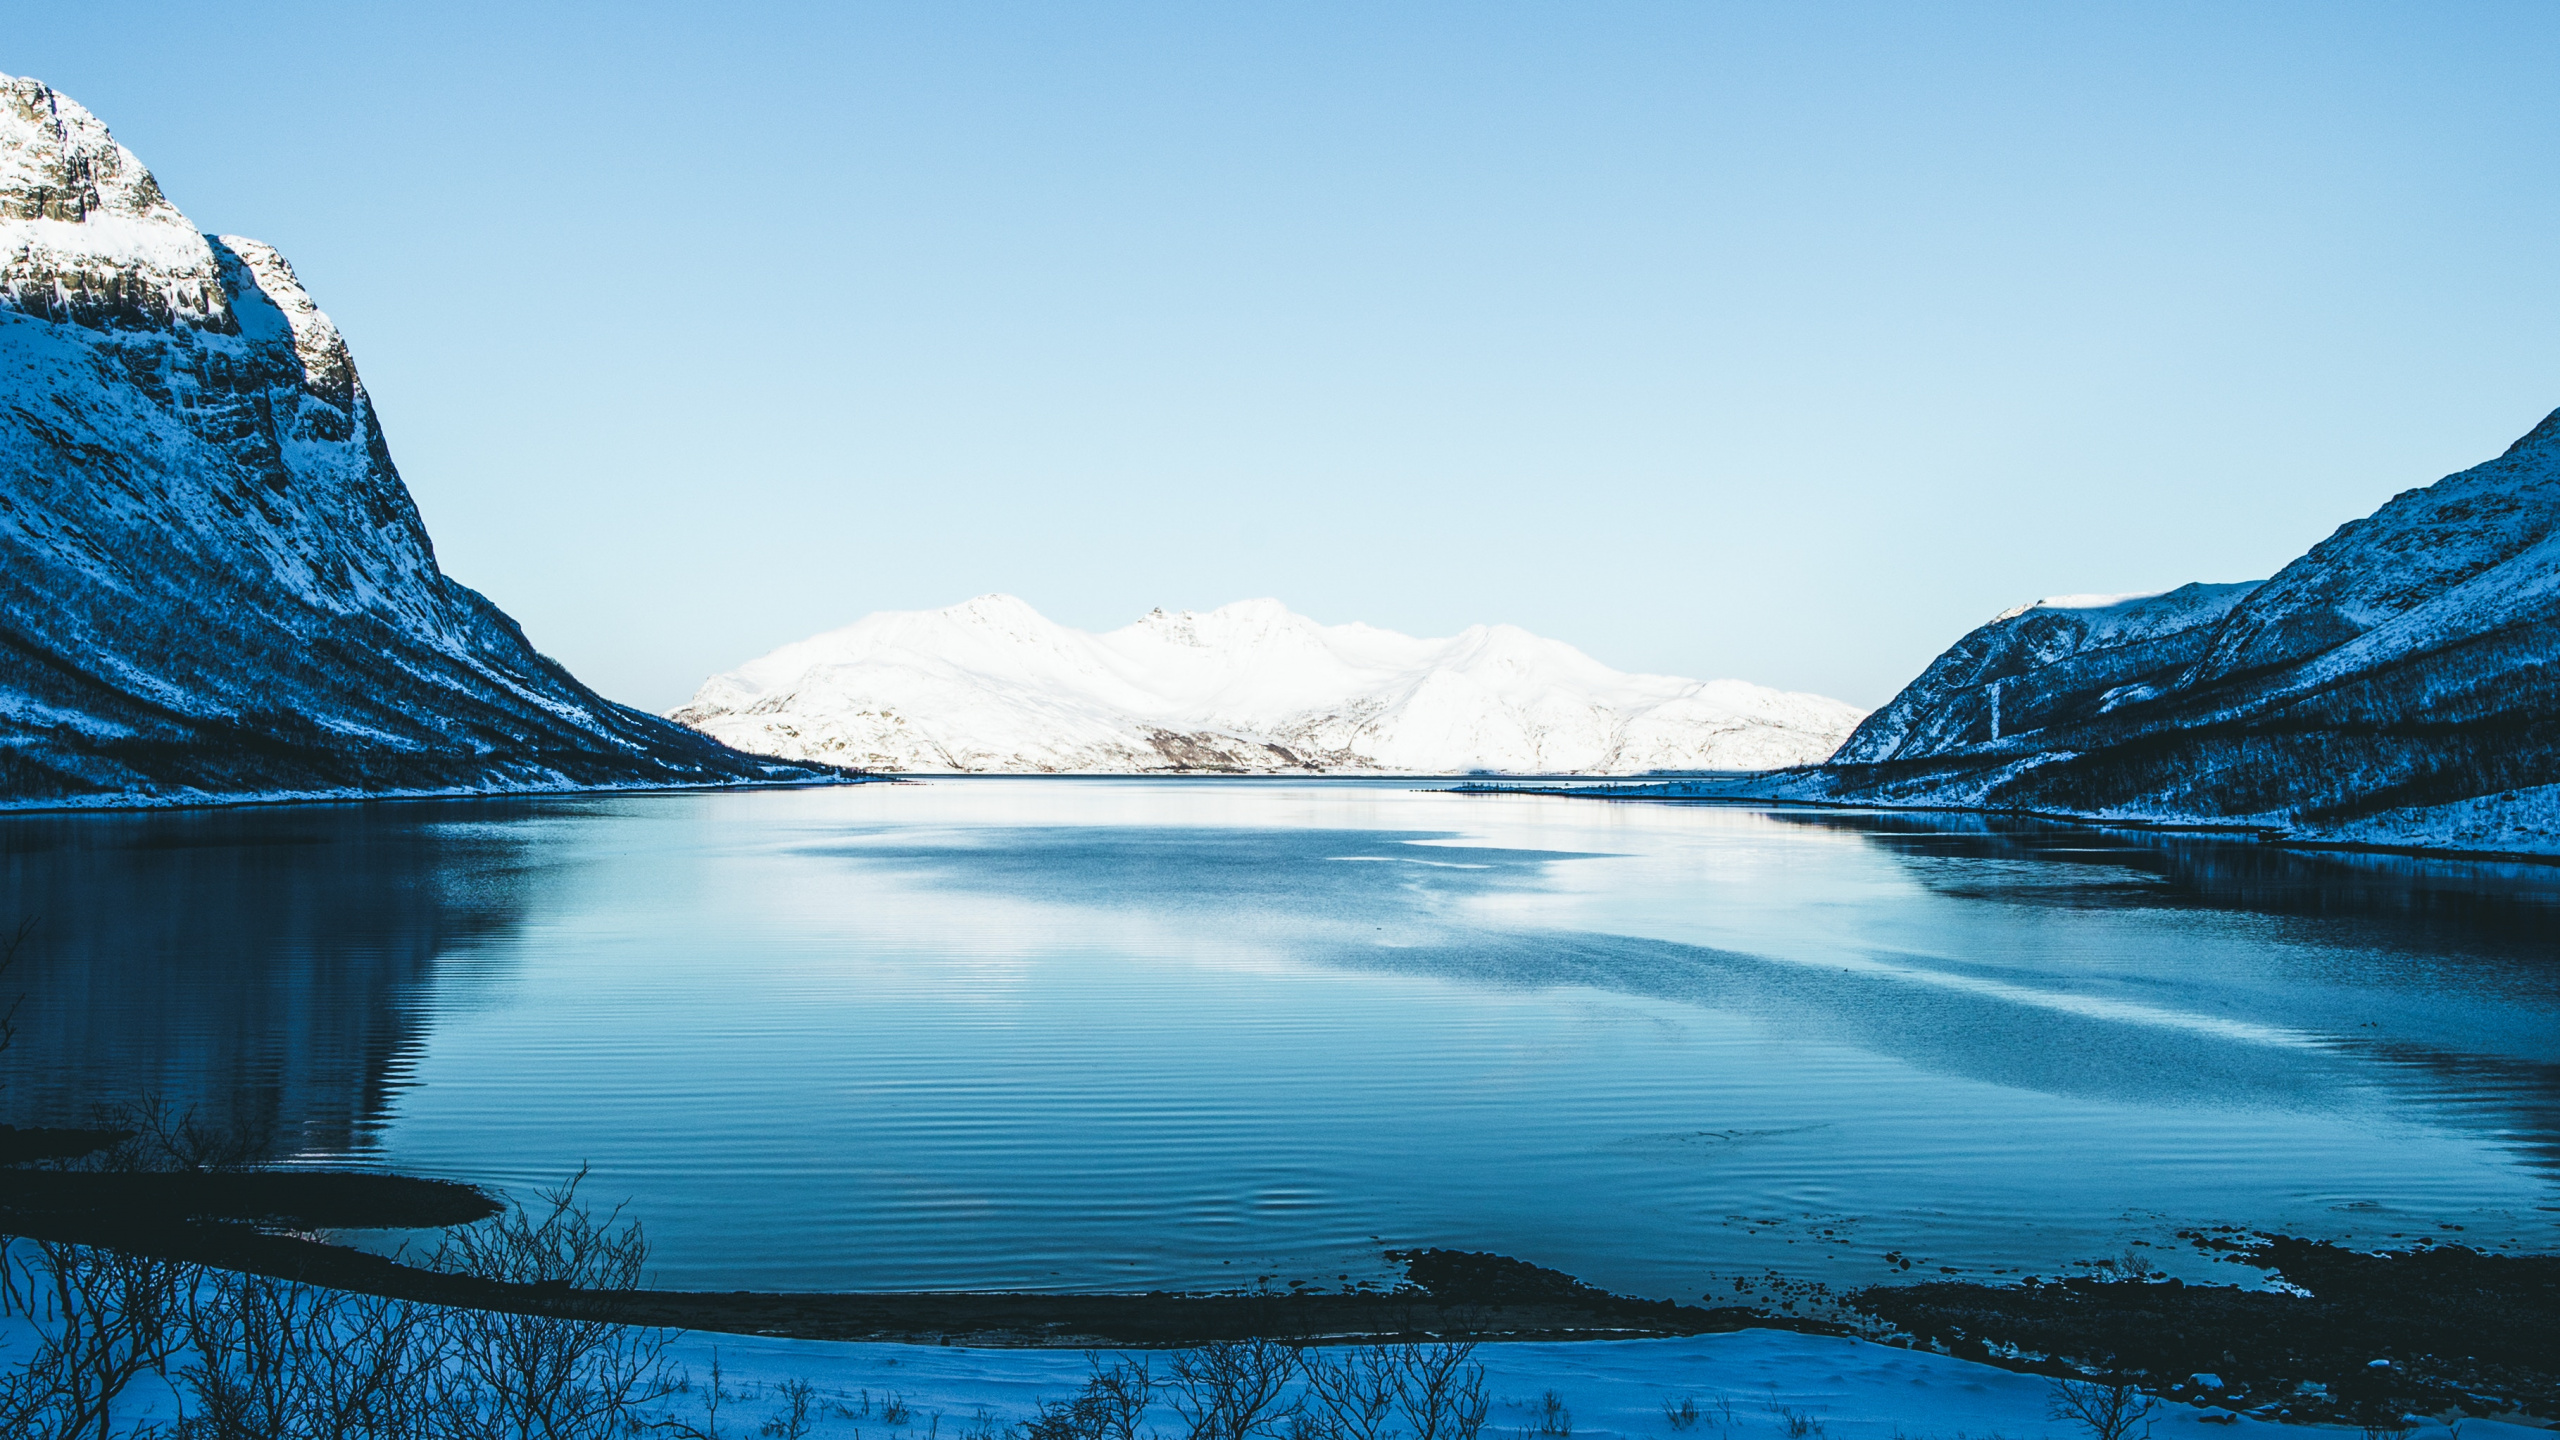 Winter, Natur, Gewässer, Naturlandschaft, Blau. Wallpaper in 2560x1440 Resolution